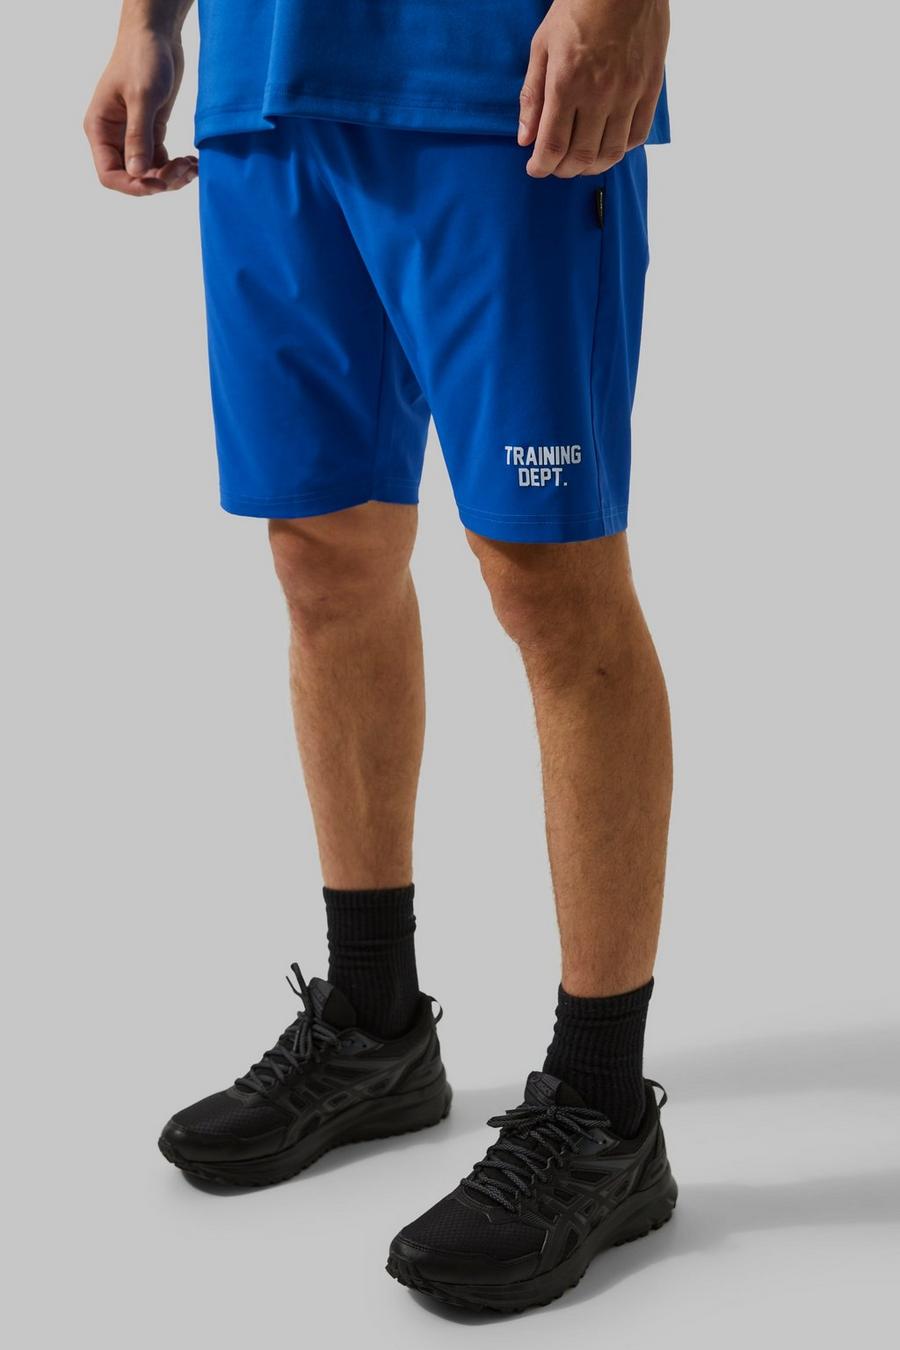 Pantalón corto Tall MAN Active resistente Training Dept, Cobalt azul